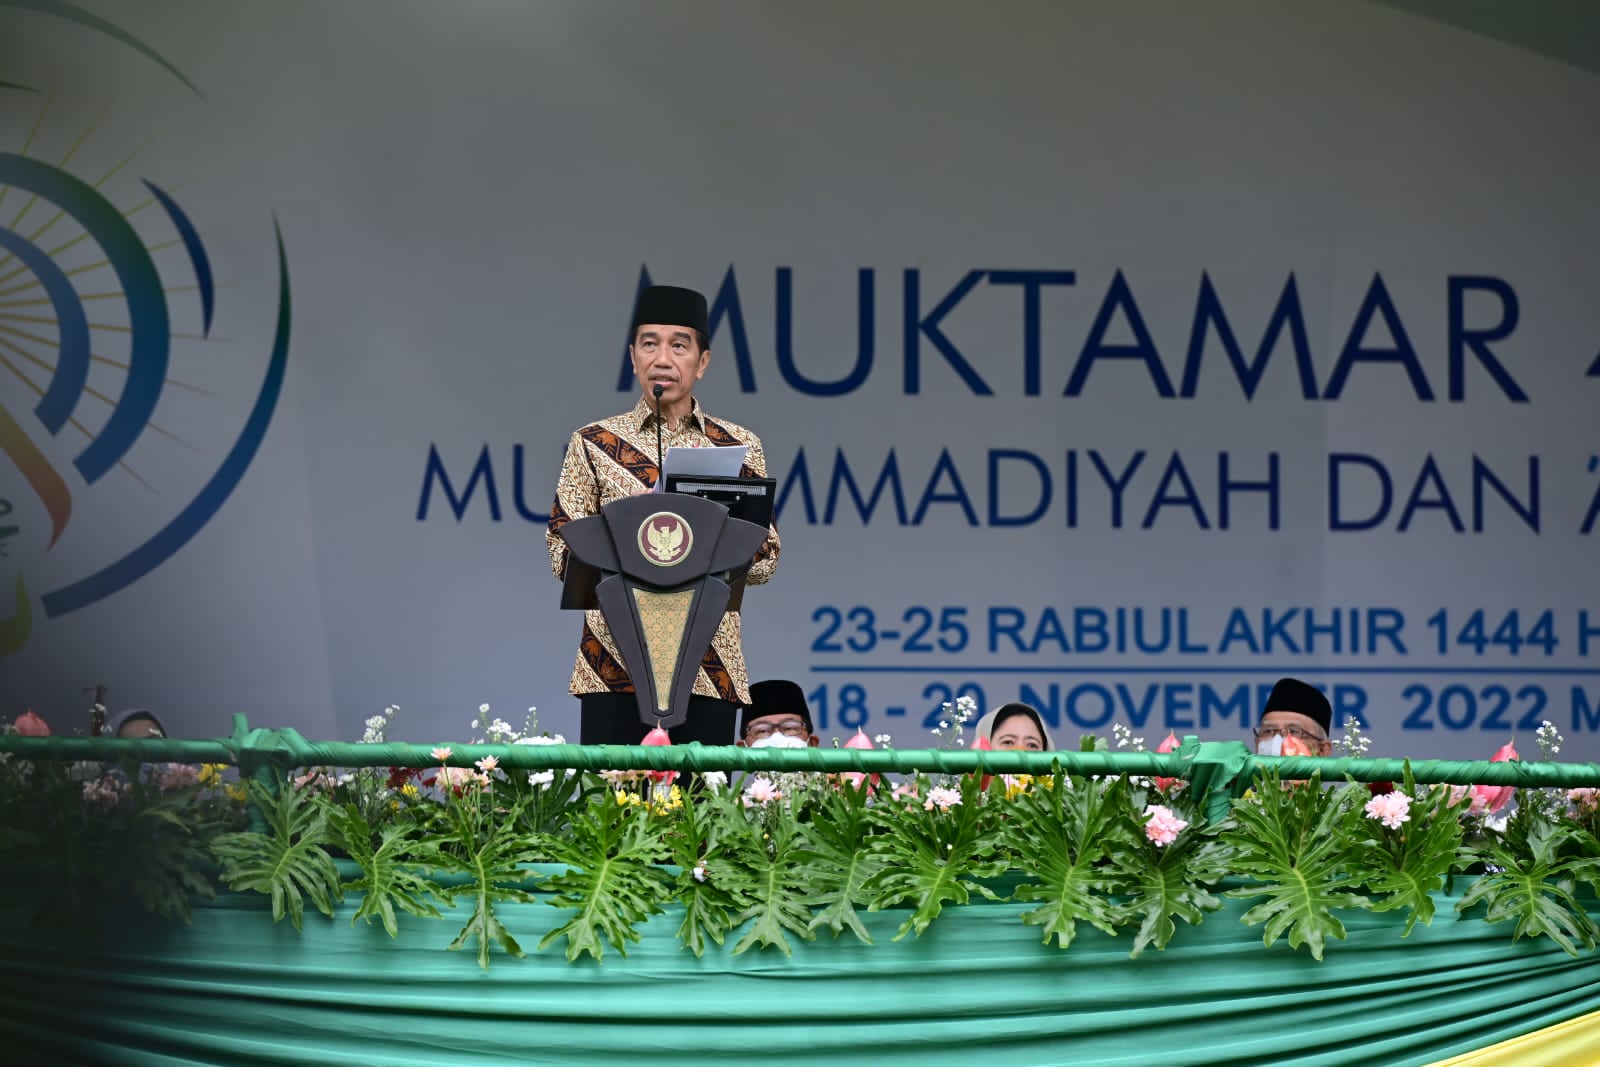 Presiden Jokowi saat memberikan sambutan dalam pembukaan Muktamar 48 Muhammadiyah dan Aisyiyah di Surakarta, Sabtu 19 November 2022 (Foto: Muchlis Jr - Biro Pers Sekretariat Presiden)